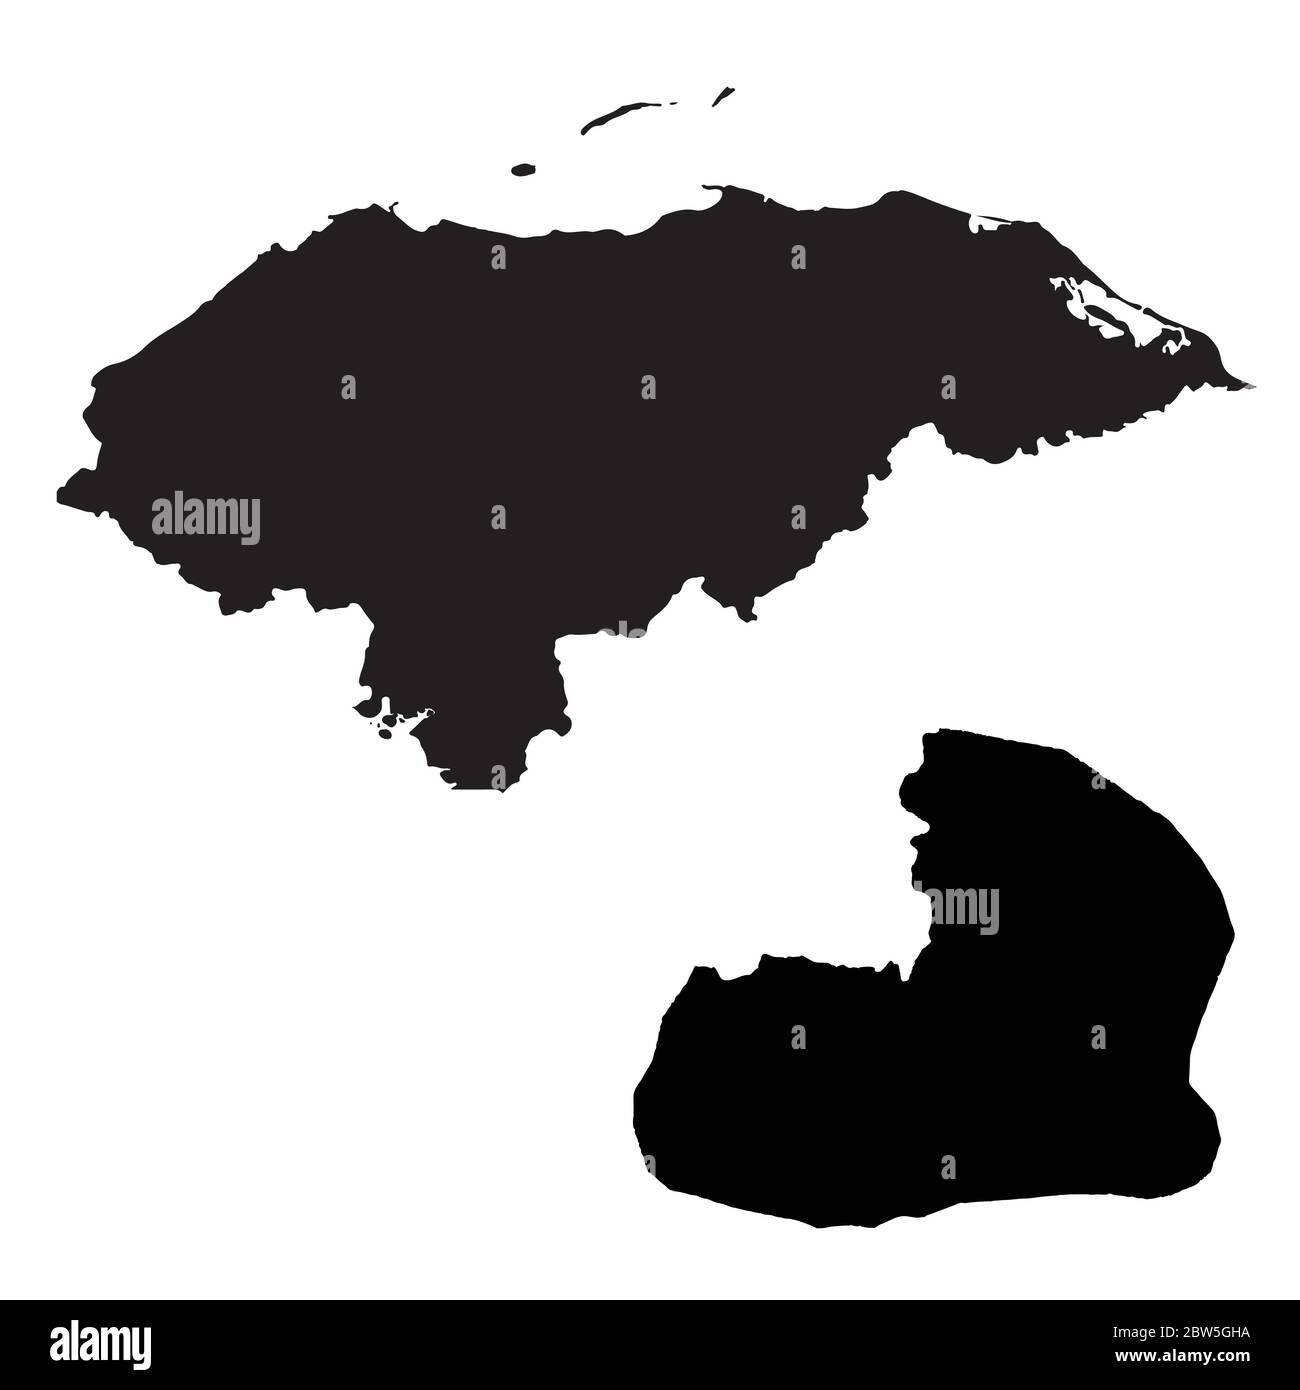 Carte vectorielle Honduras et Tegucigalpa. Pays et capitale. Illustration de vecteur isolé. Noir sur fond blanc. Illustration de l'EPS 10. Illustration de Vecteur